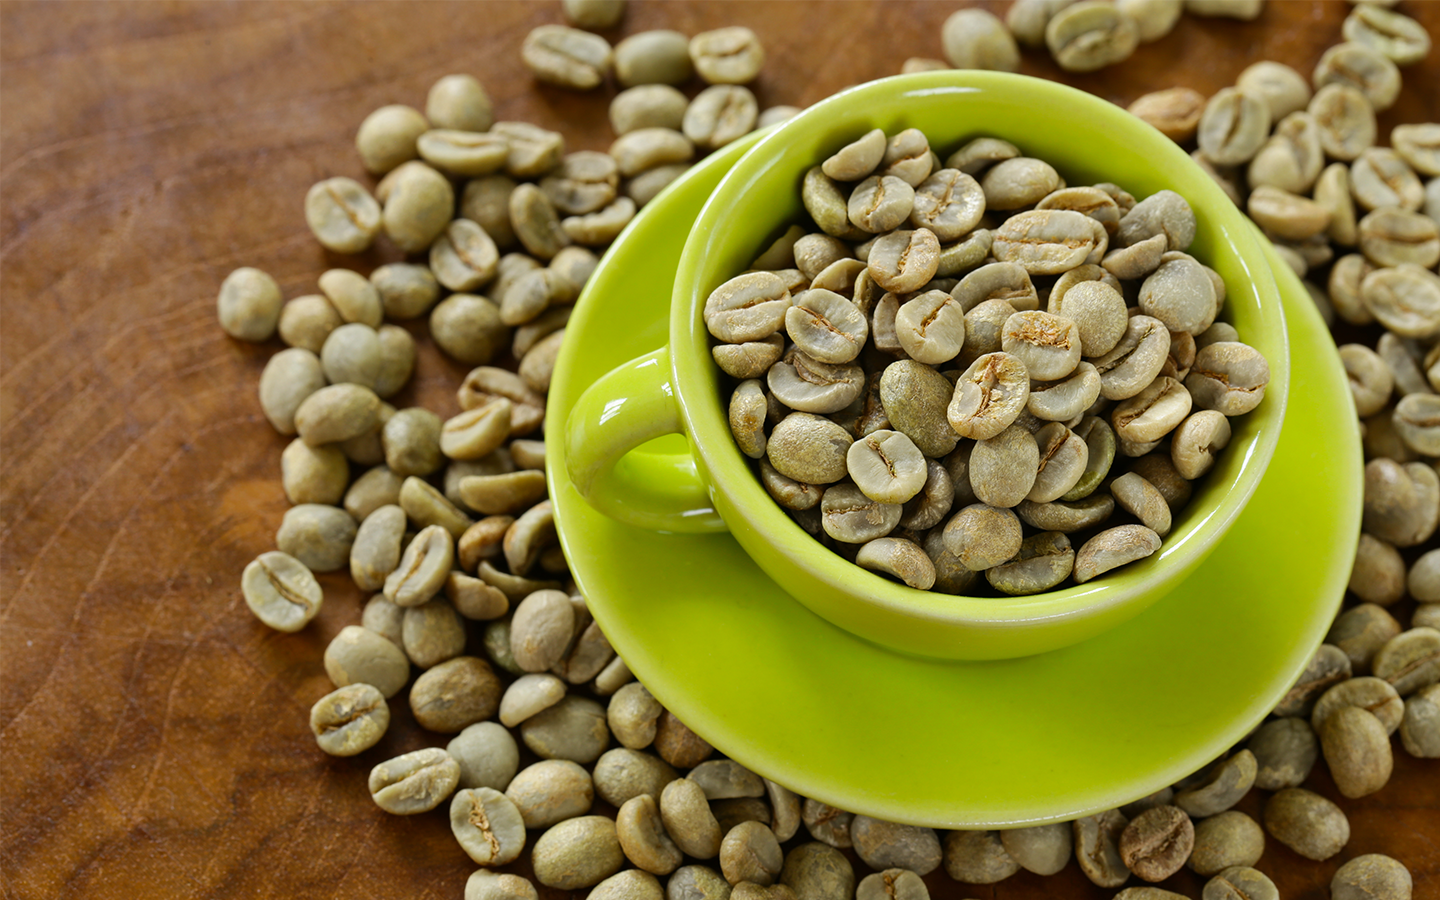 Kawa zielona – co to jest i jakie ma właściwości? Wpływ zielonej kawy na zdrowie i wygląd